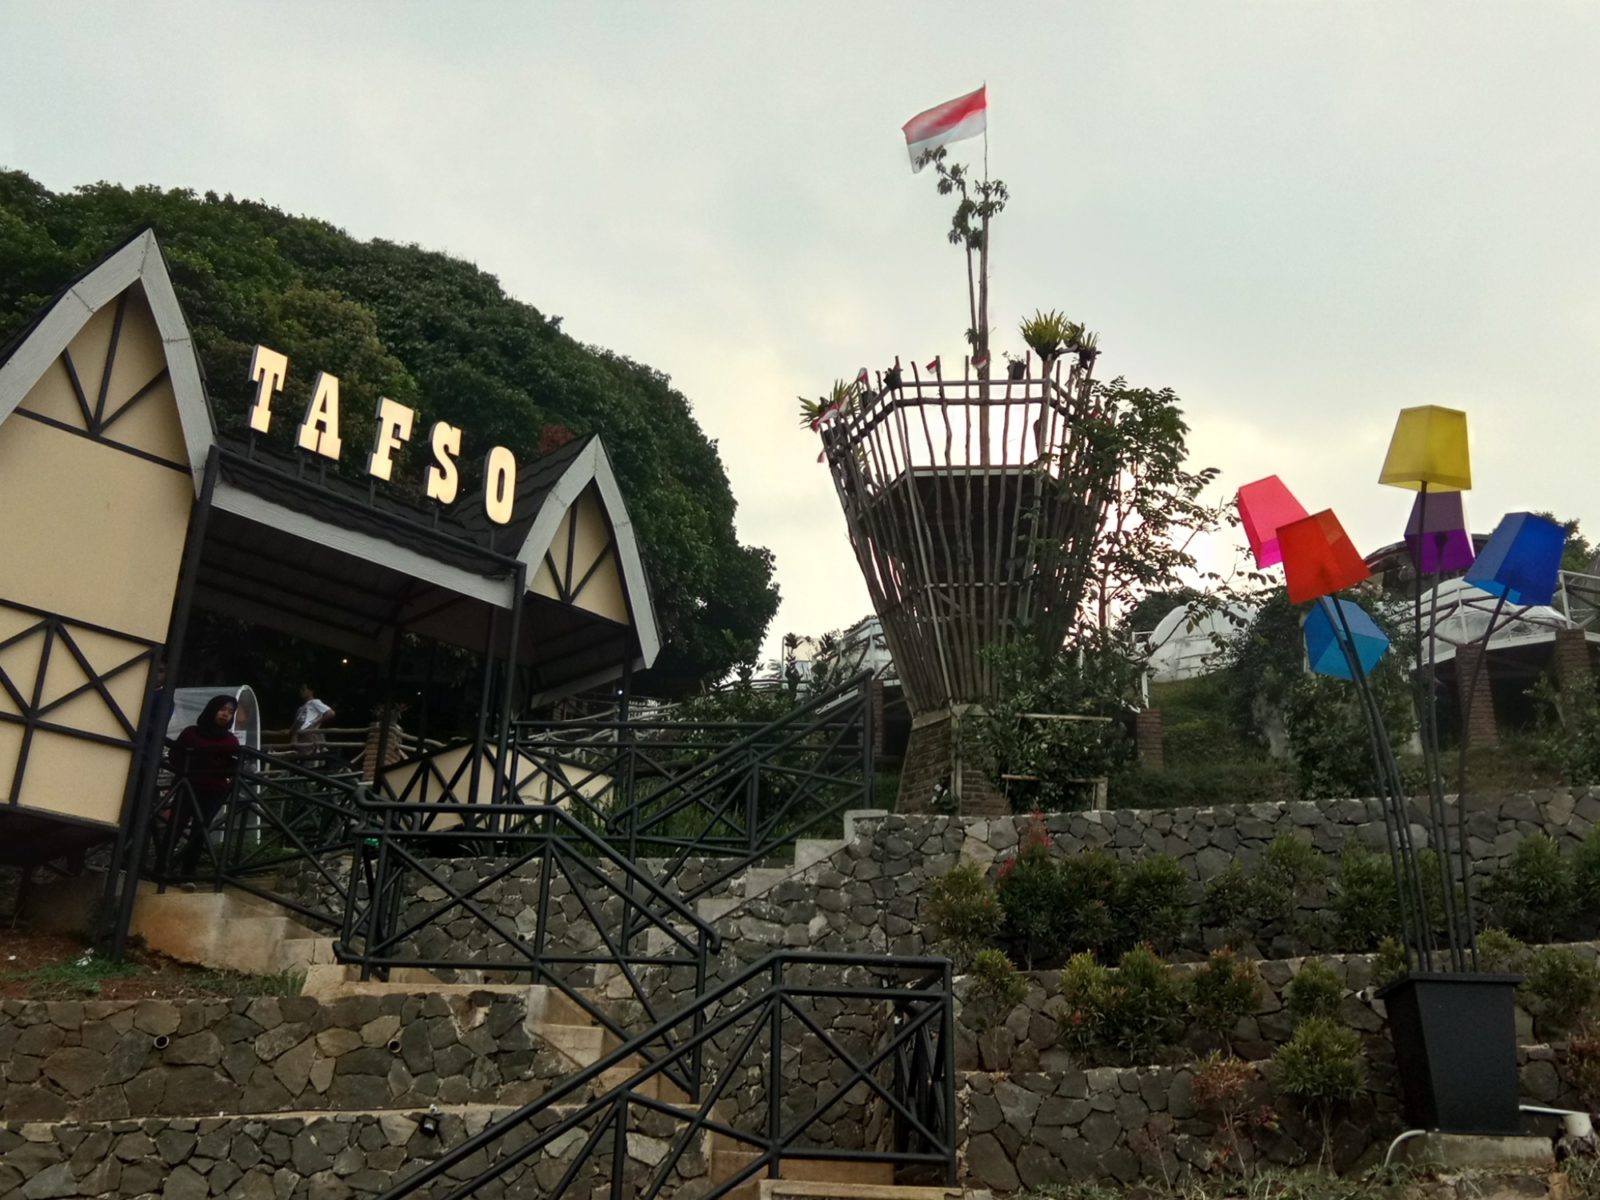 Tafso, tempat wisata di lembang yang cocok untuk keluarga